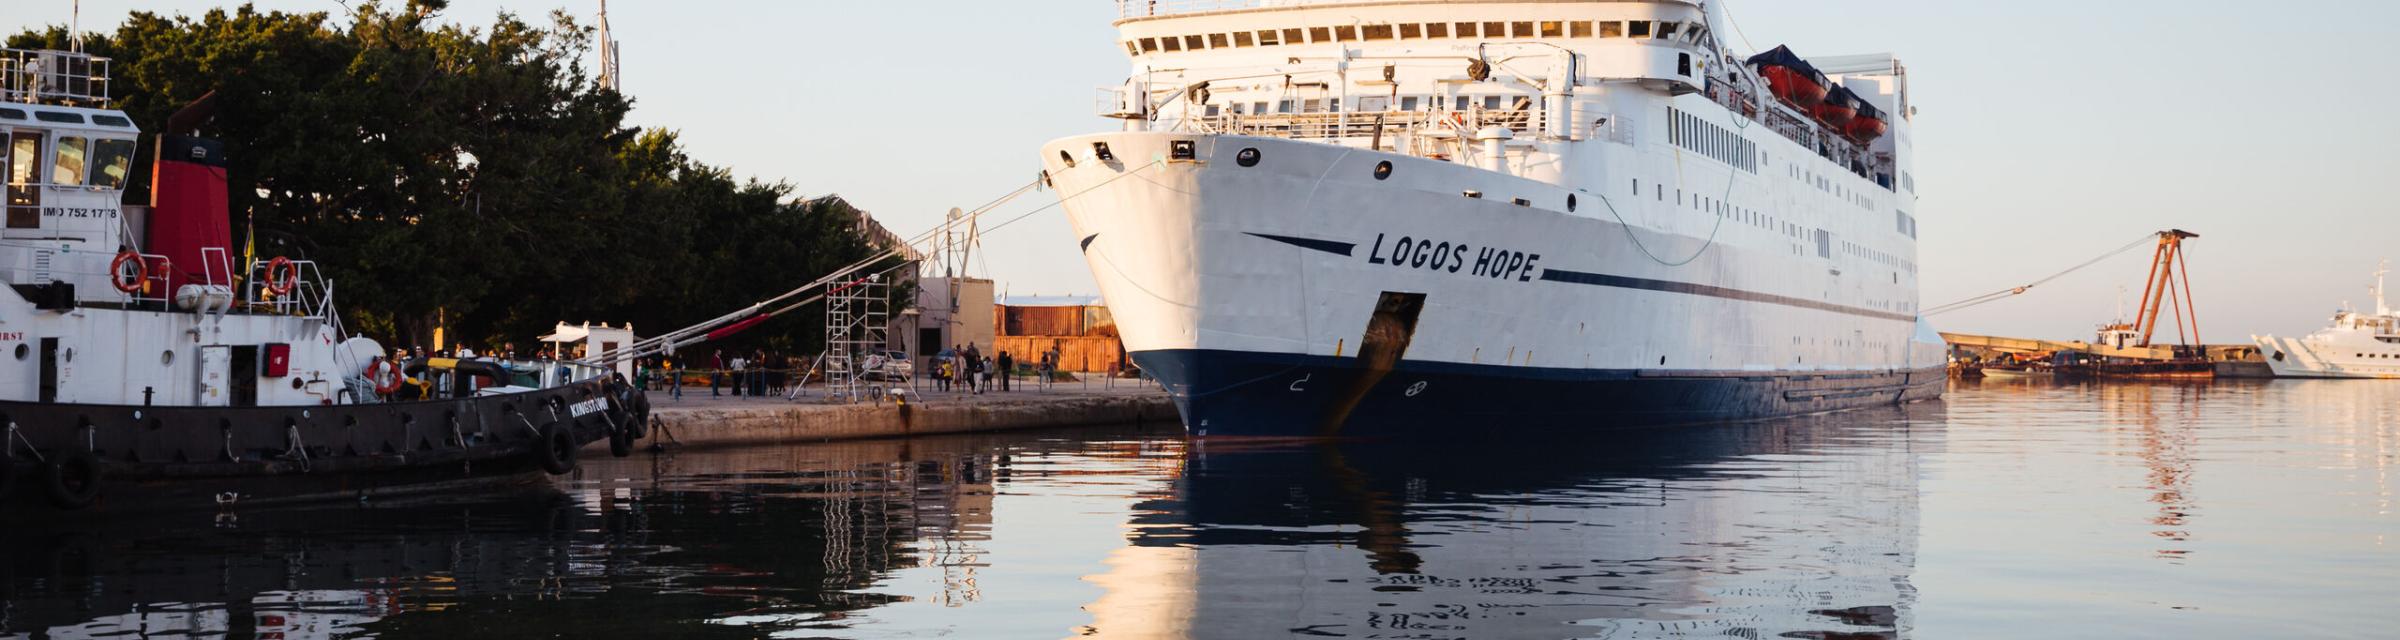 Beirut, Lebanon :: Logos Hope docks in the Port of Beirut.